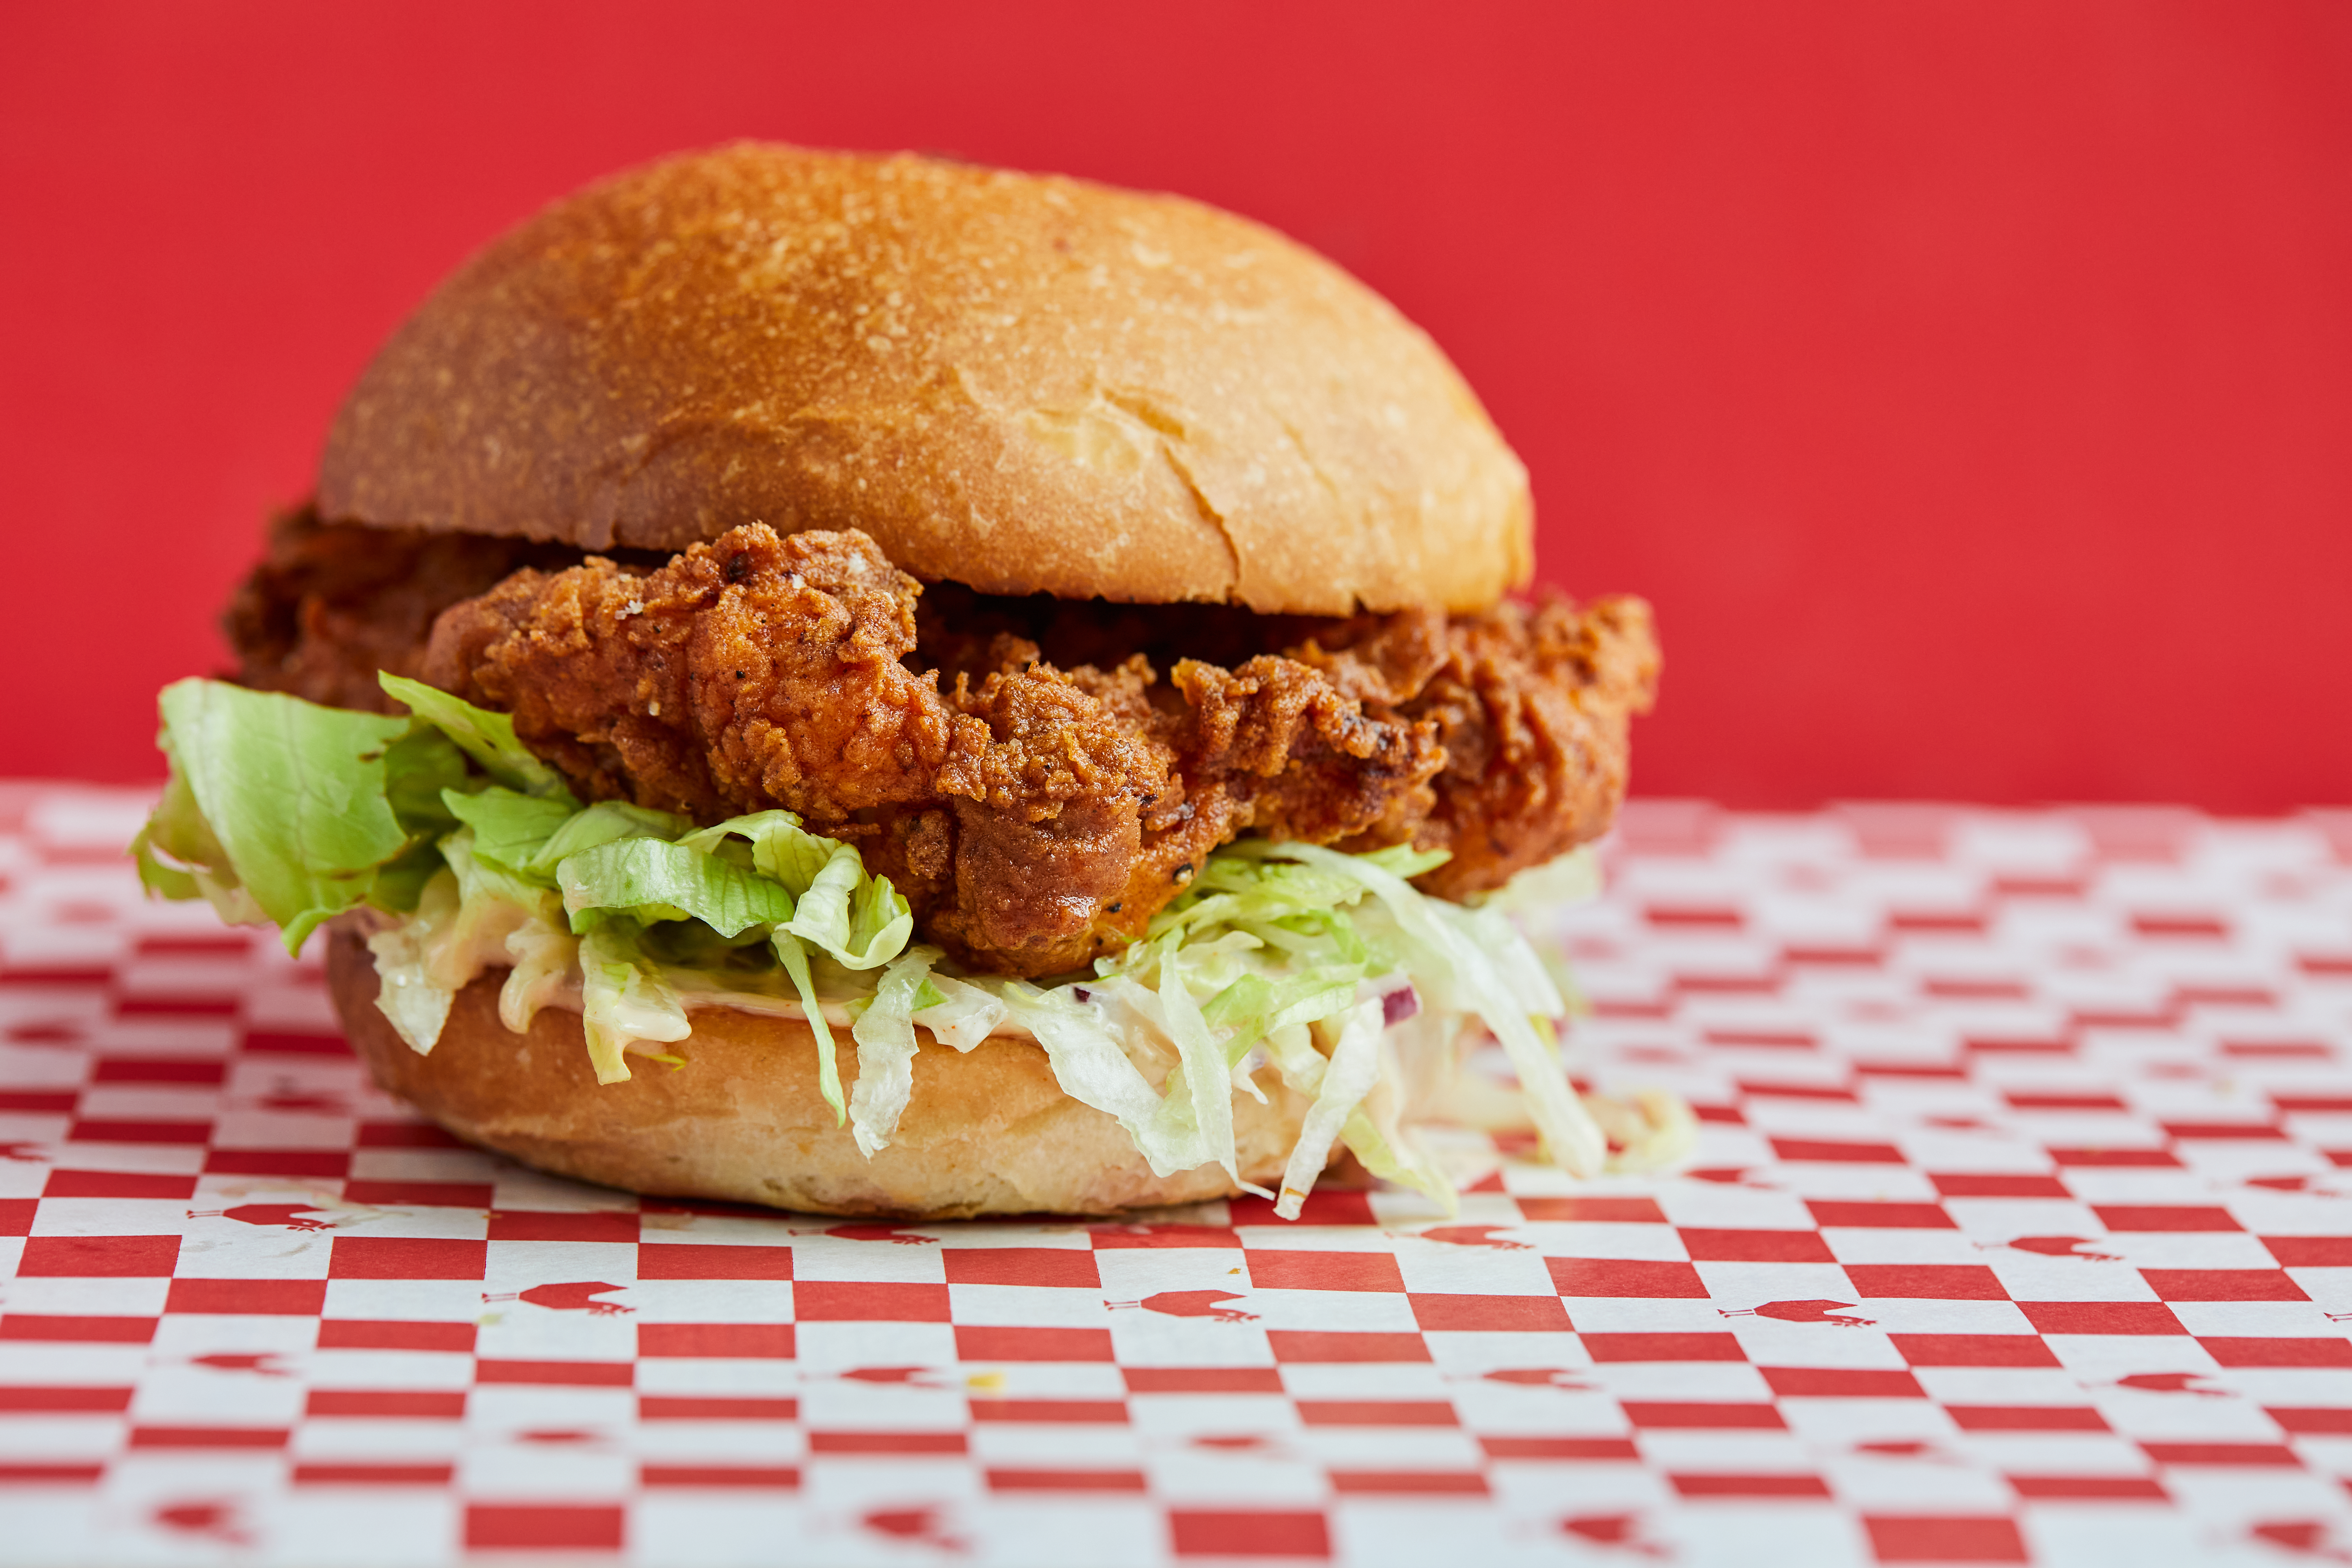 Újítás a Zingben: felkerült a tanyasi csirkéből készült burger az étlapra